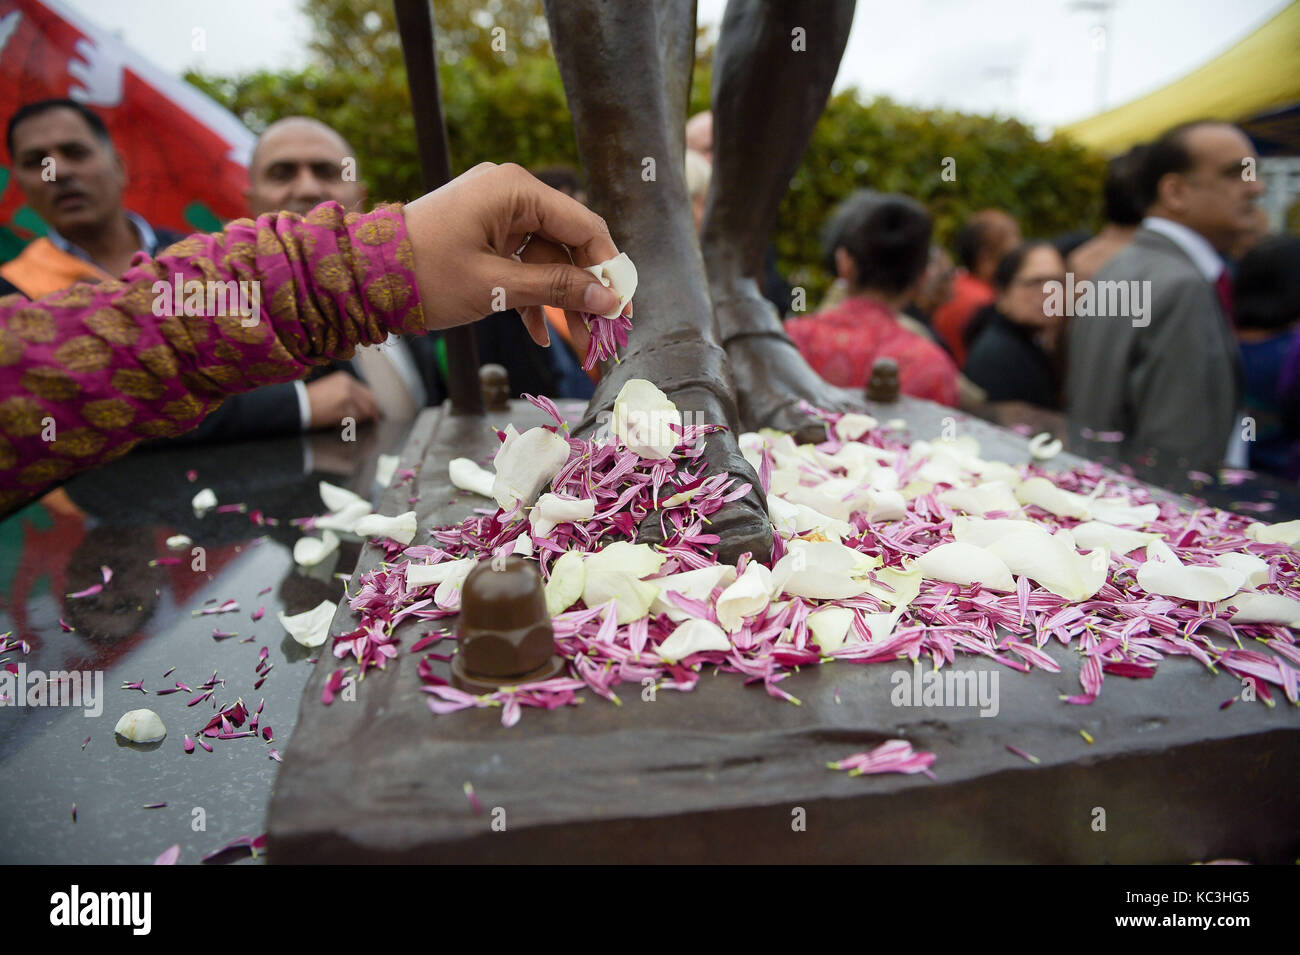 Menschen verbreitet Blütenblätter zu Füßen der Statue von Mahatma Gandhi, wie es in der Bucht von Cardiff, Wales vorgestellt, der Tag seiner Geburt im Jahre 1869 zu markieren und den Internationalen Tag der Gewaltlosigkeit, die auch am 2. Oktober gefeiert wird. Stockfoto